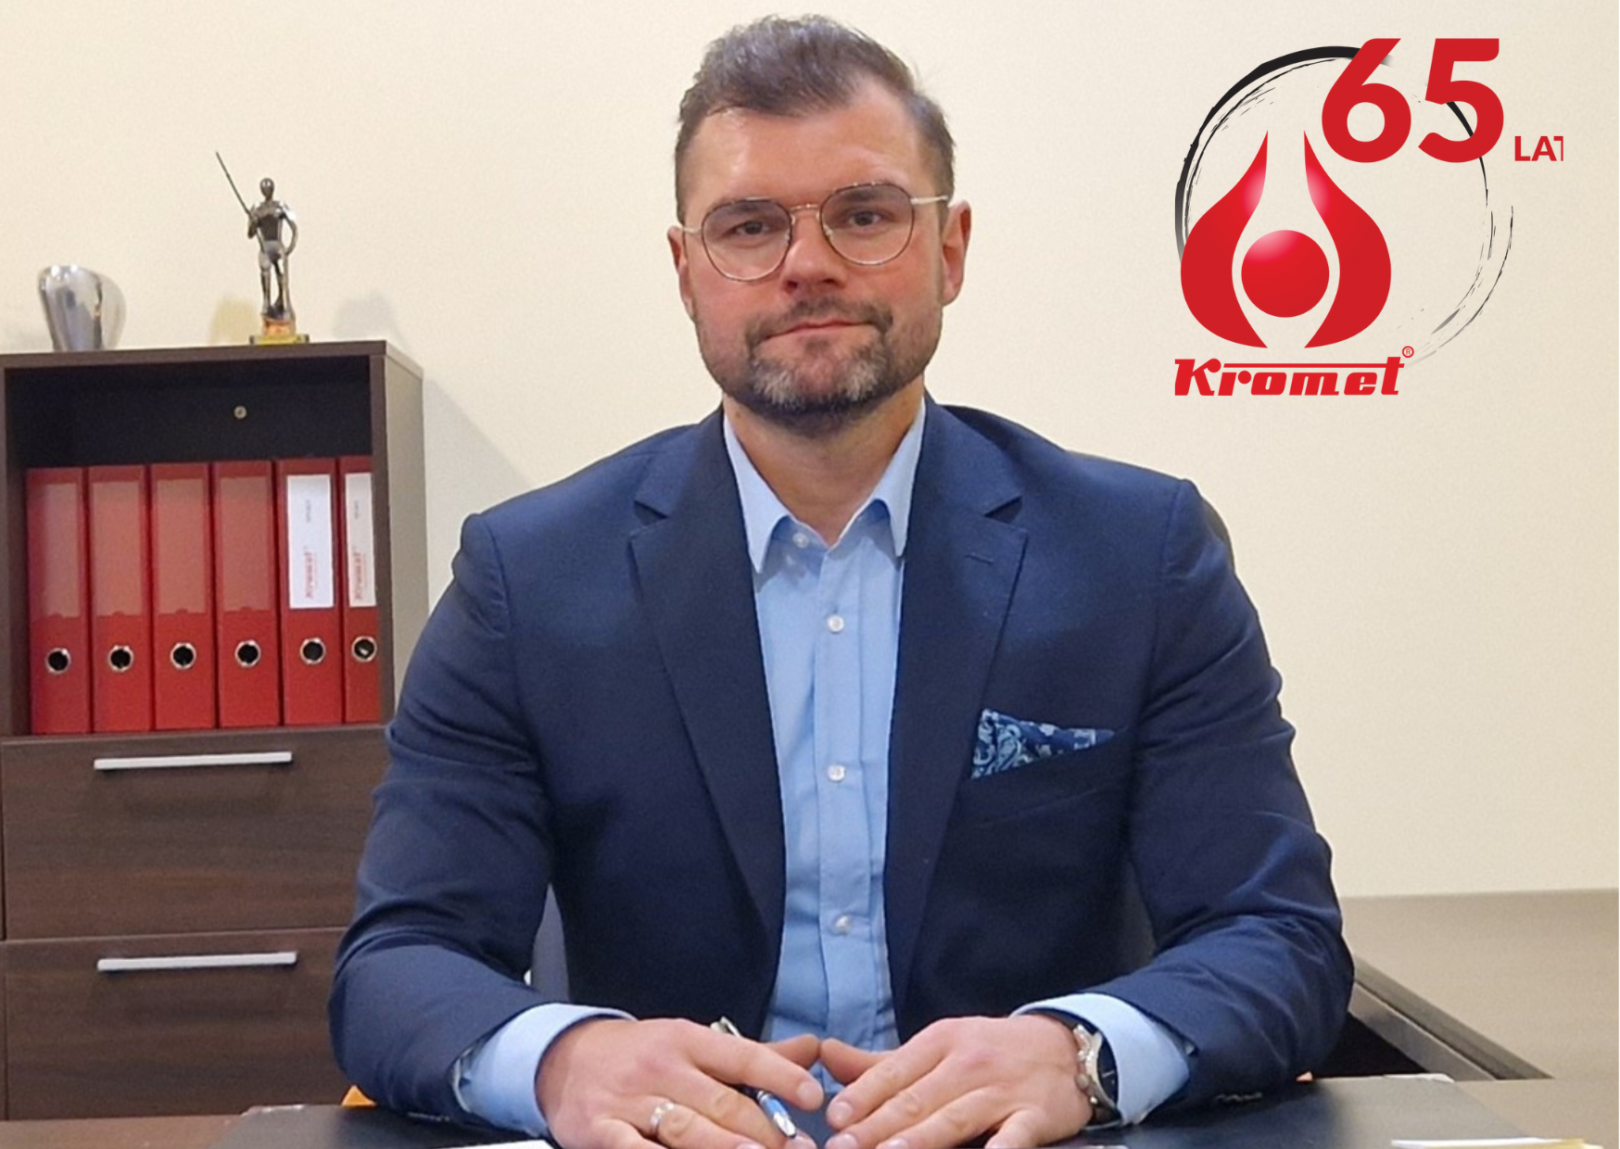 Dominik Stefański: Kromet ma już 65 lat